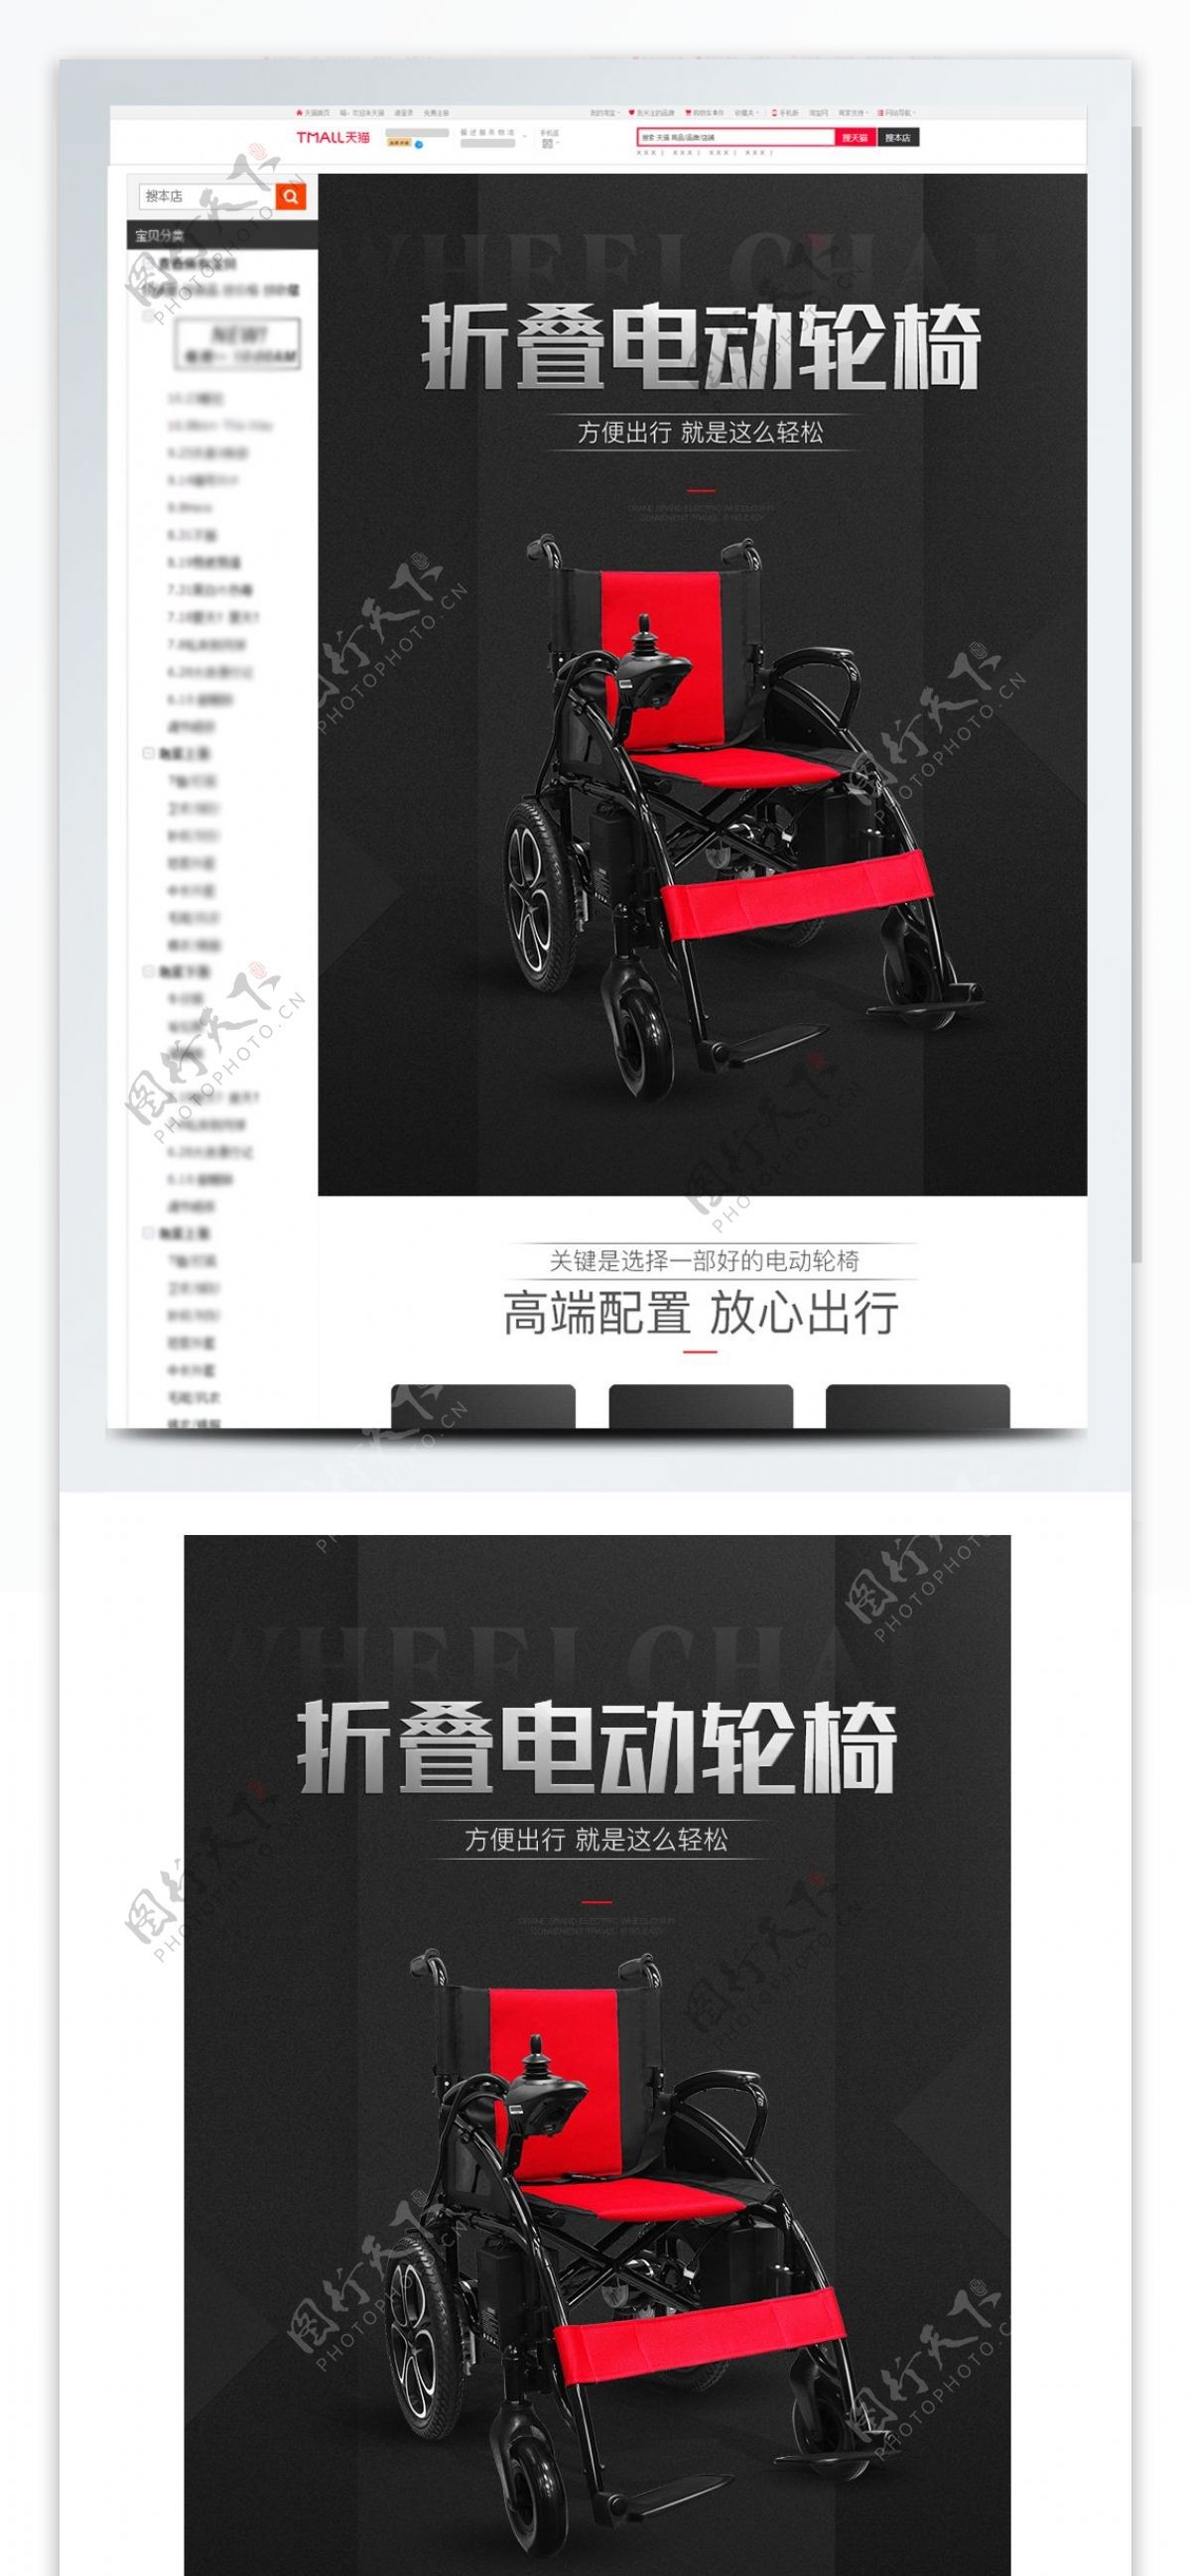 淘宝电动轮椅黑色红色